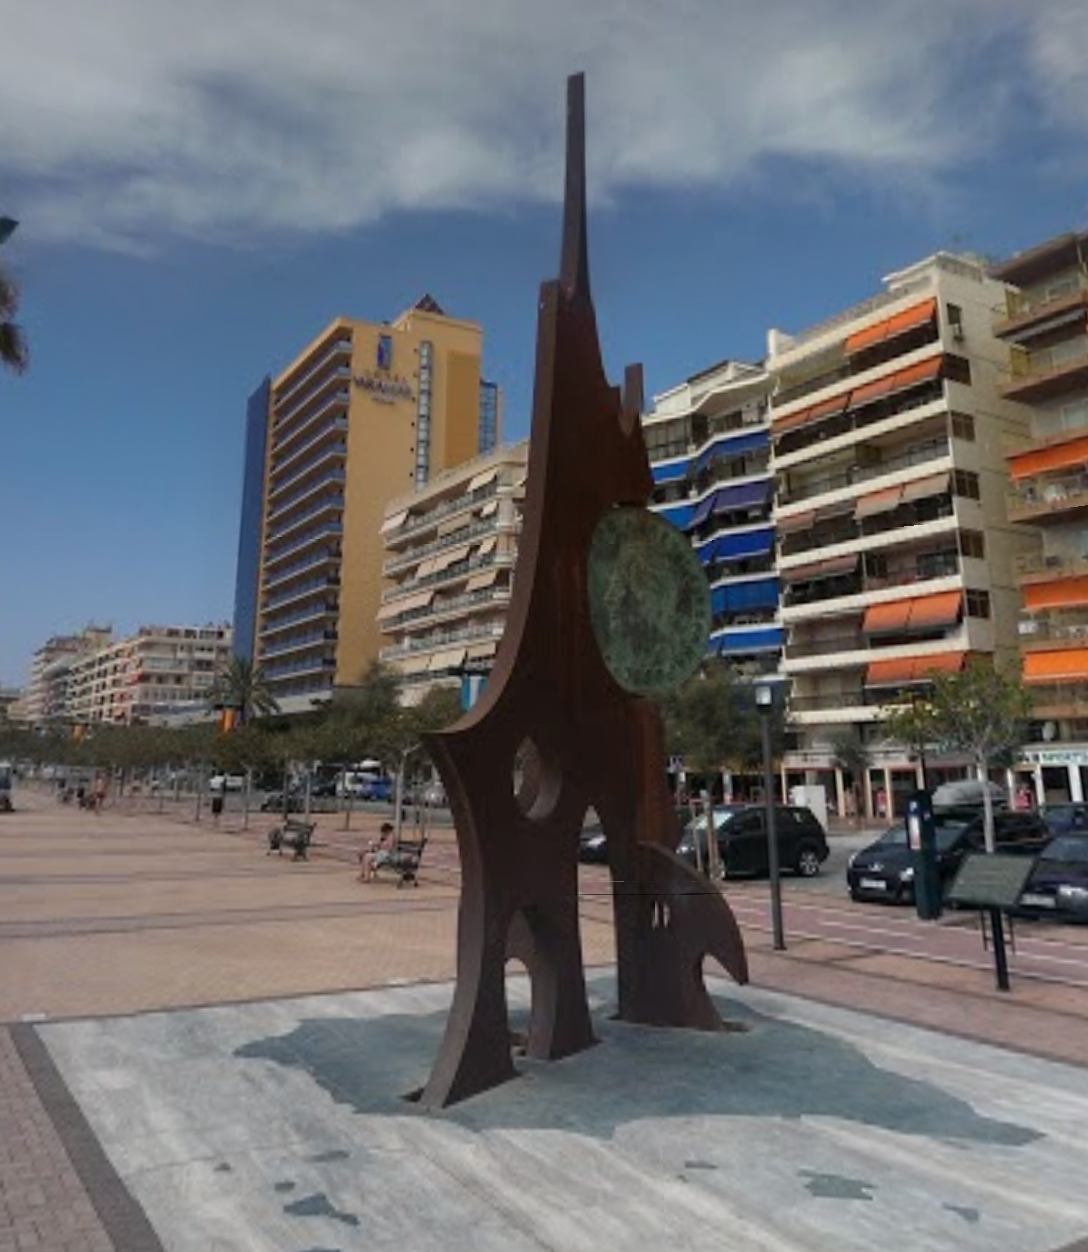 Monumento a La Peseta by Google Earth